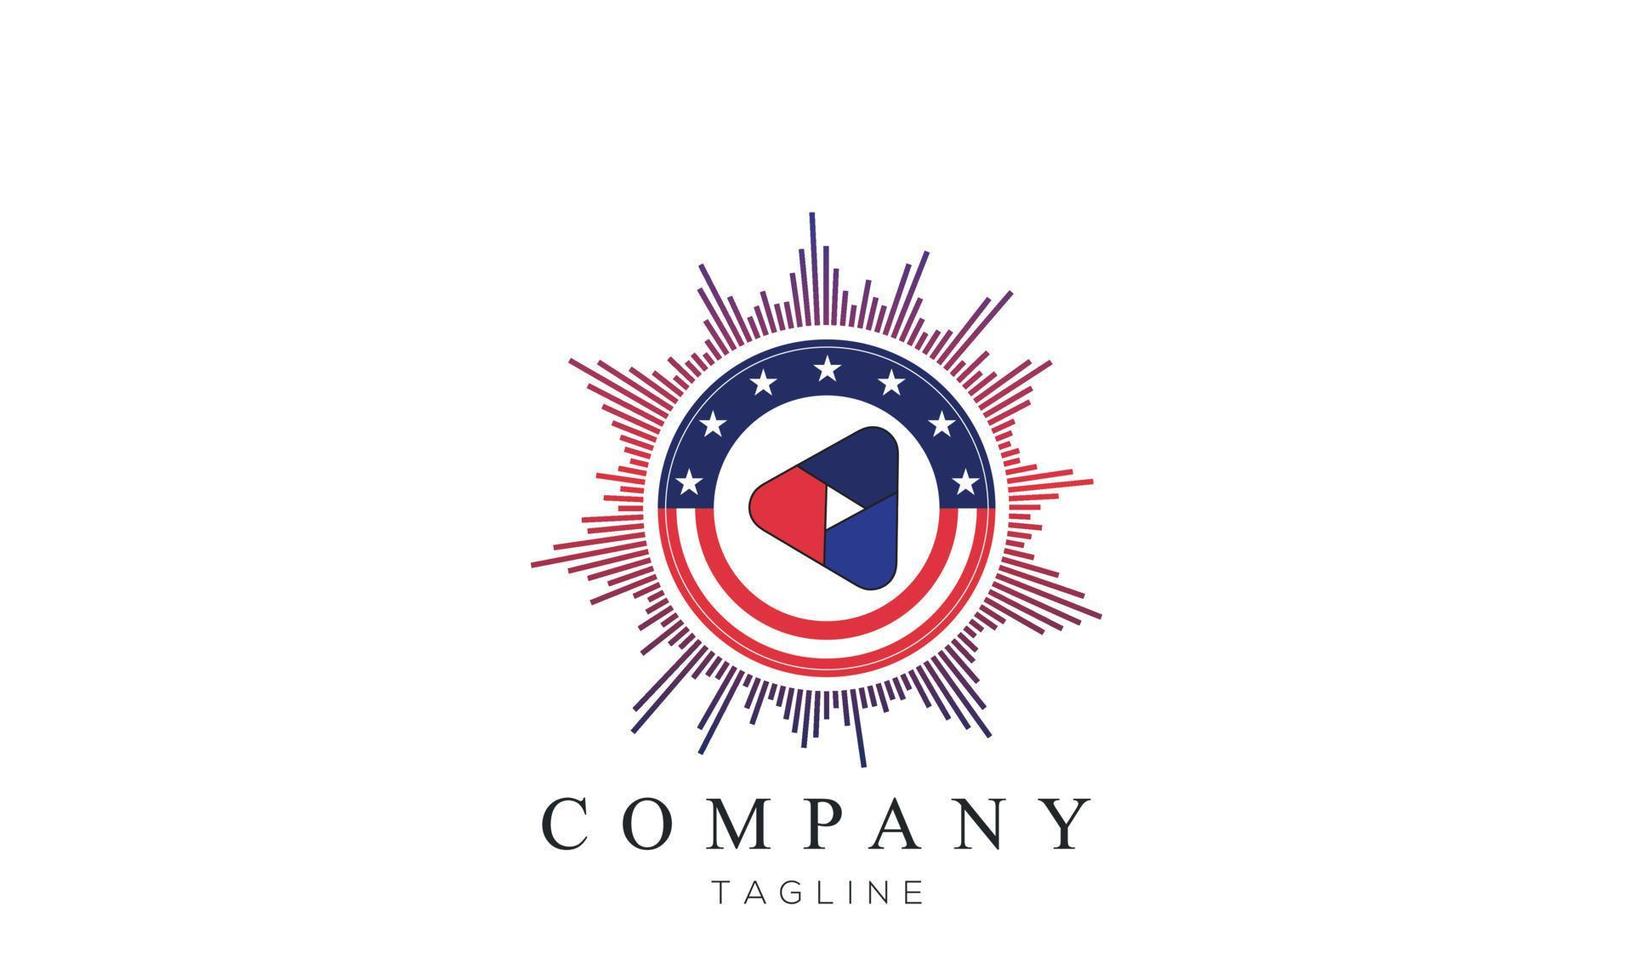 Estados Unidos logotipo design vector modelo fundo branco. feito no ícone redondo da bandeira dos eua. logotipo dos eua. logotipo de design criativo da bandeira americana